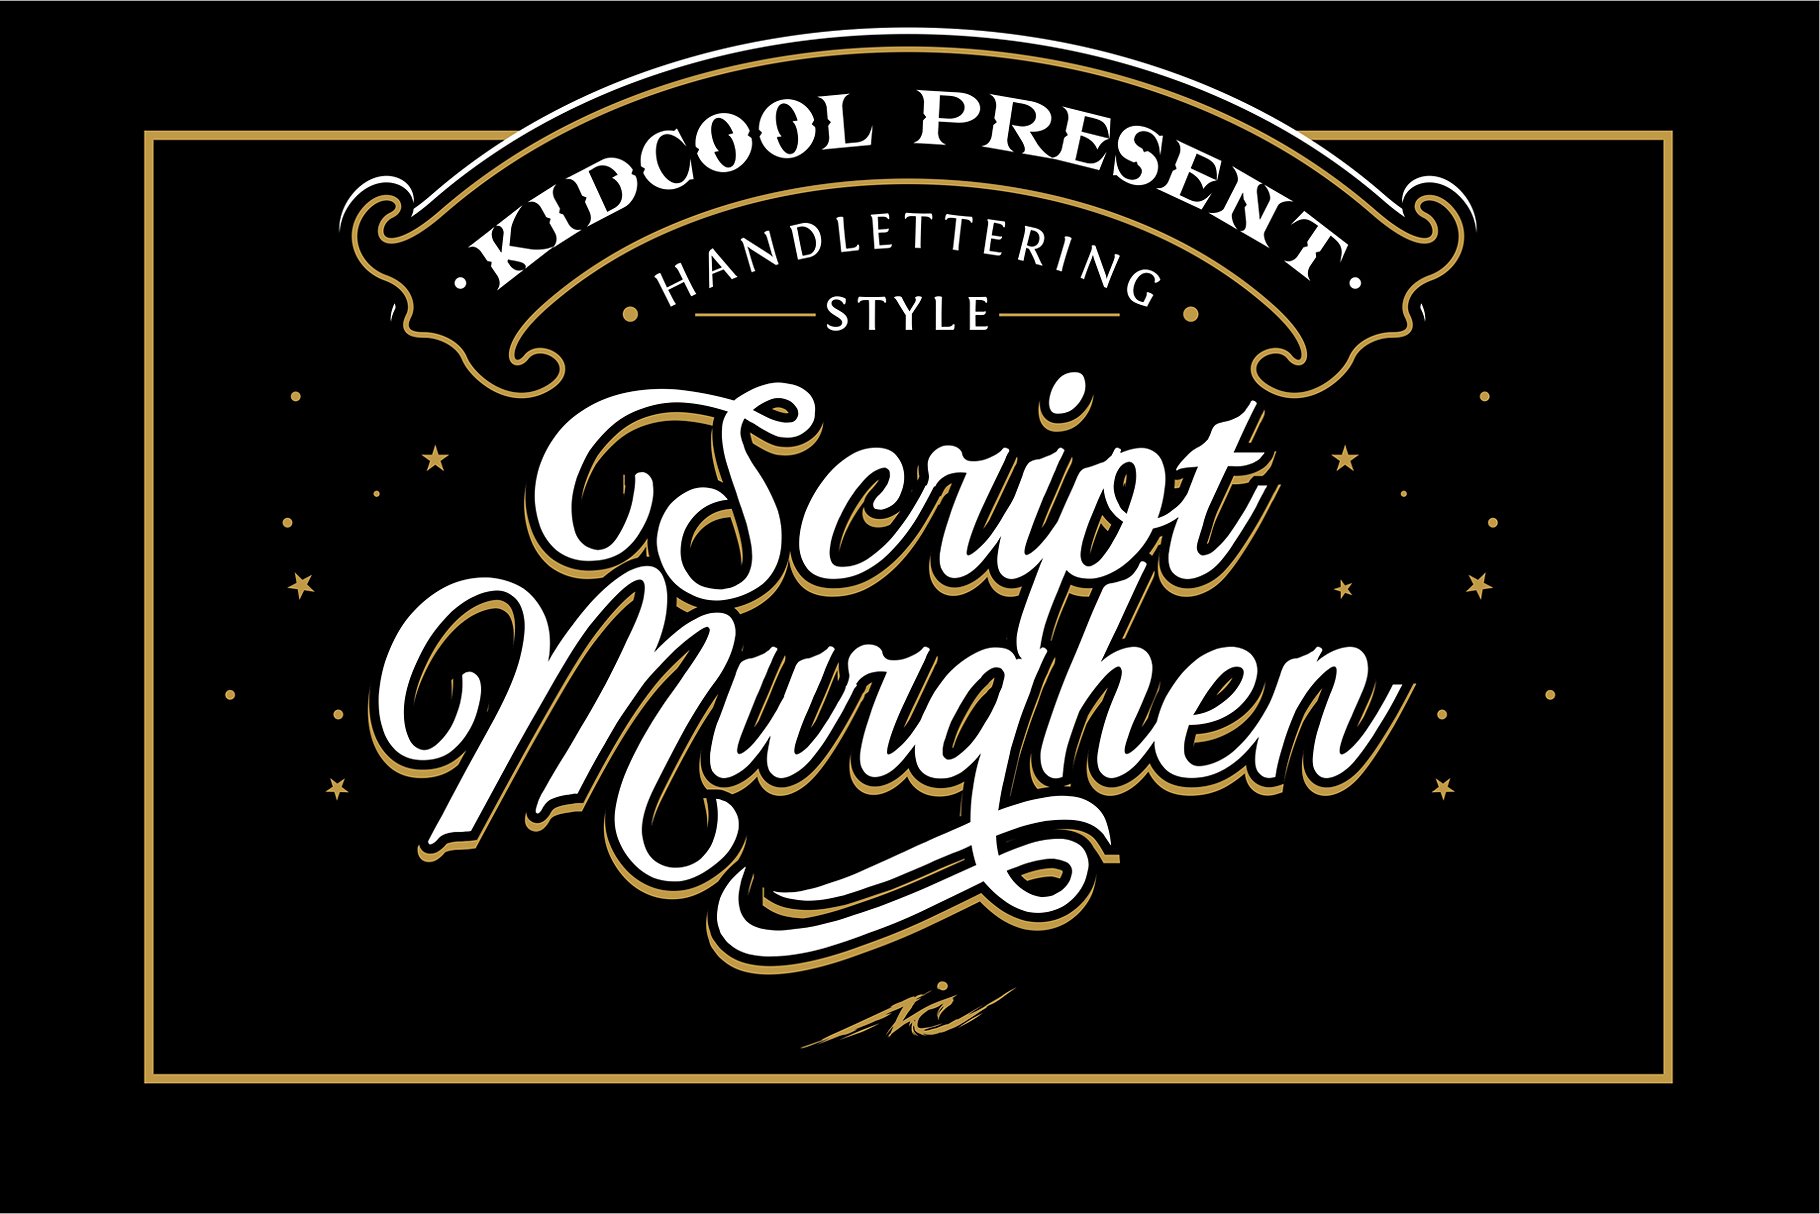 Murghen script font in handlettering style